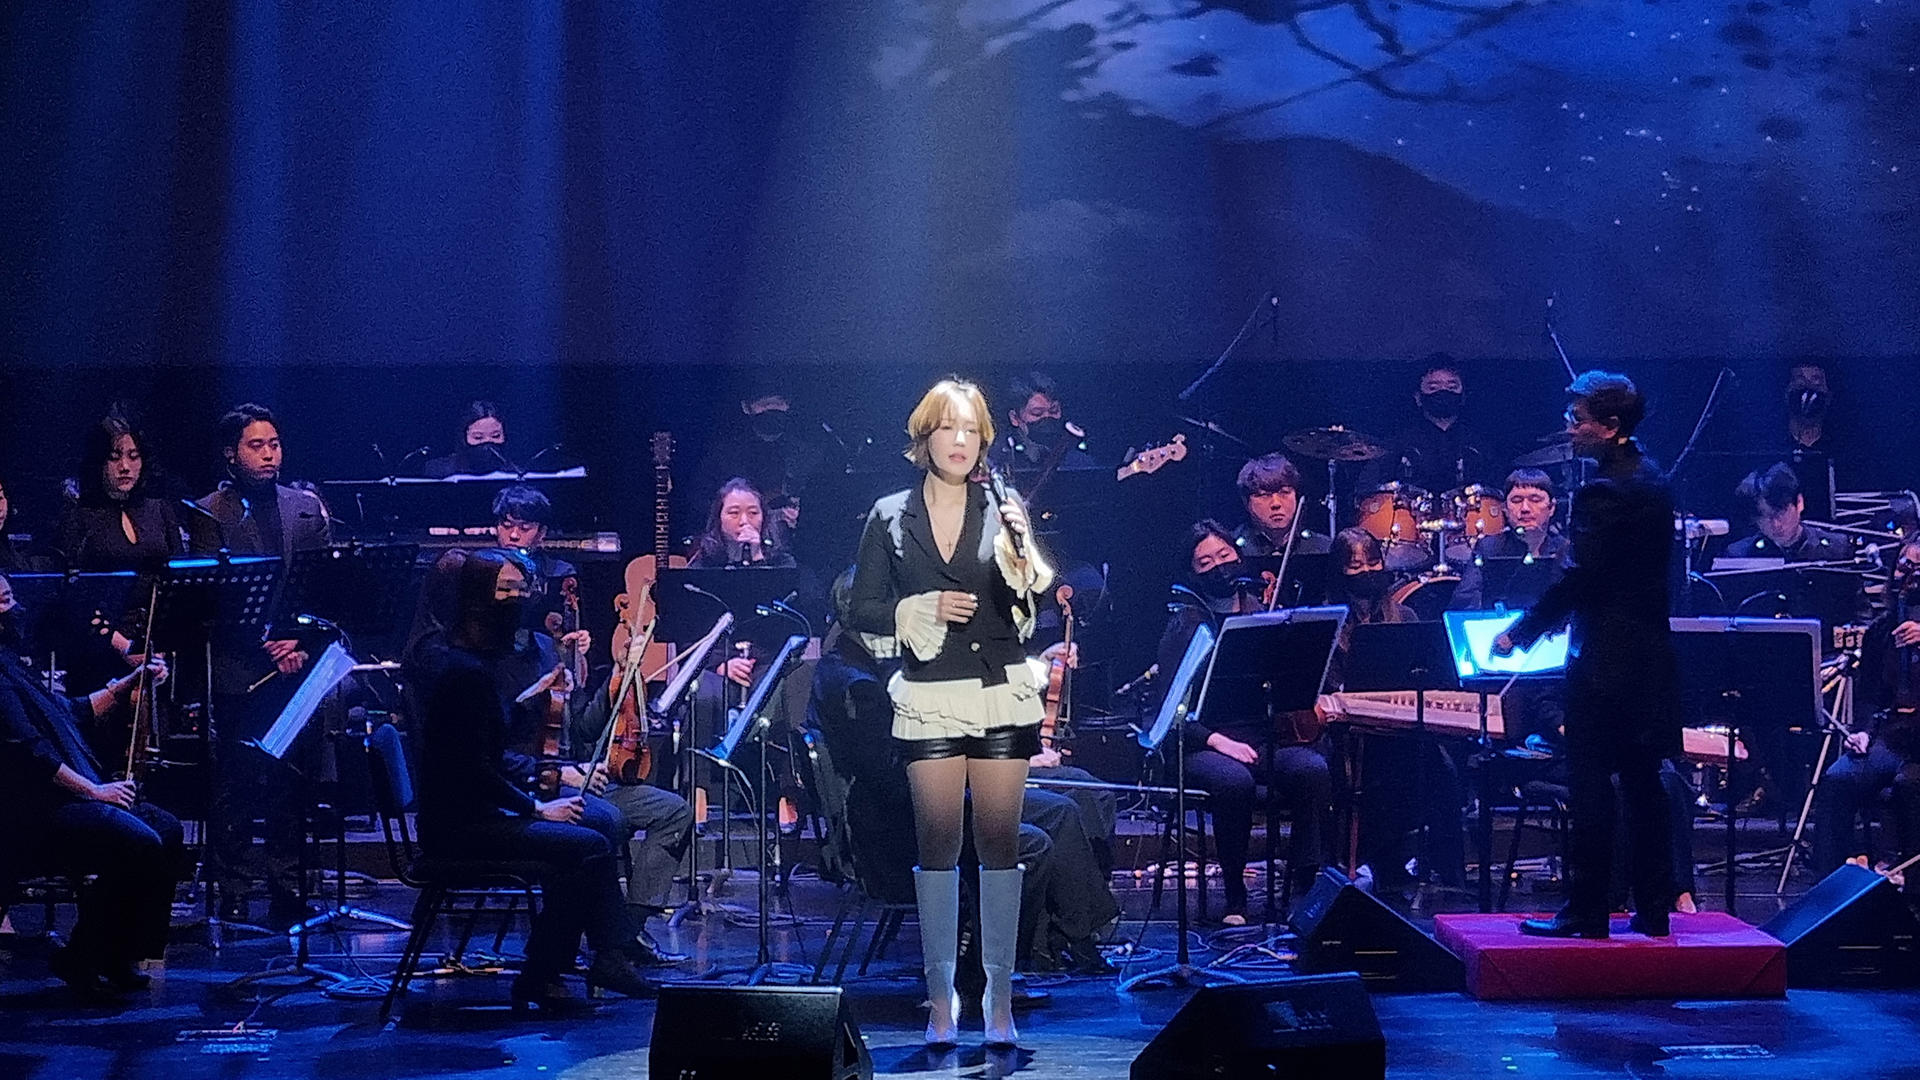 보이스퀸 정수연과 팝스오케스트라가 함께하는 「퓨전콘서트」 7